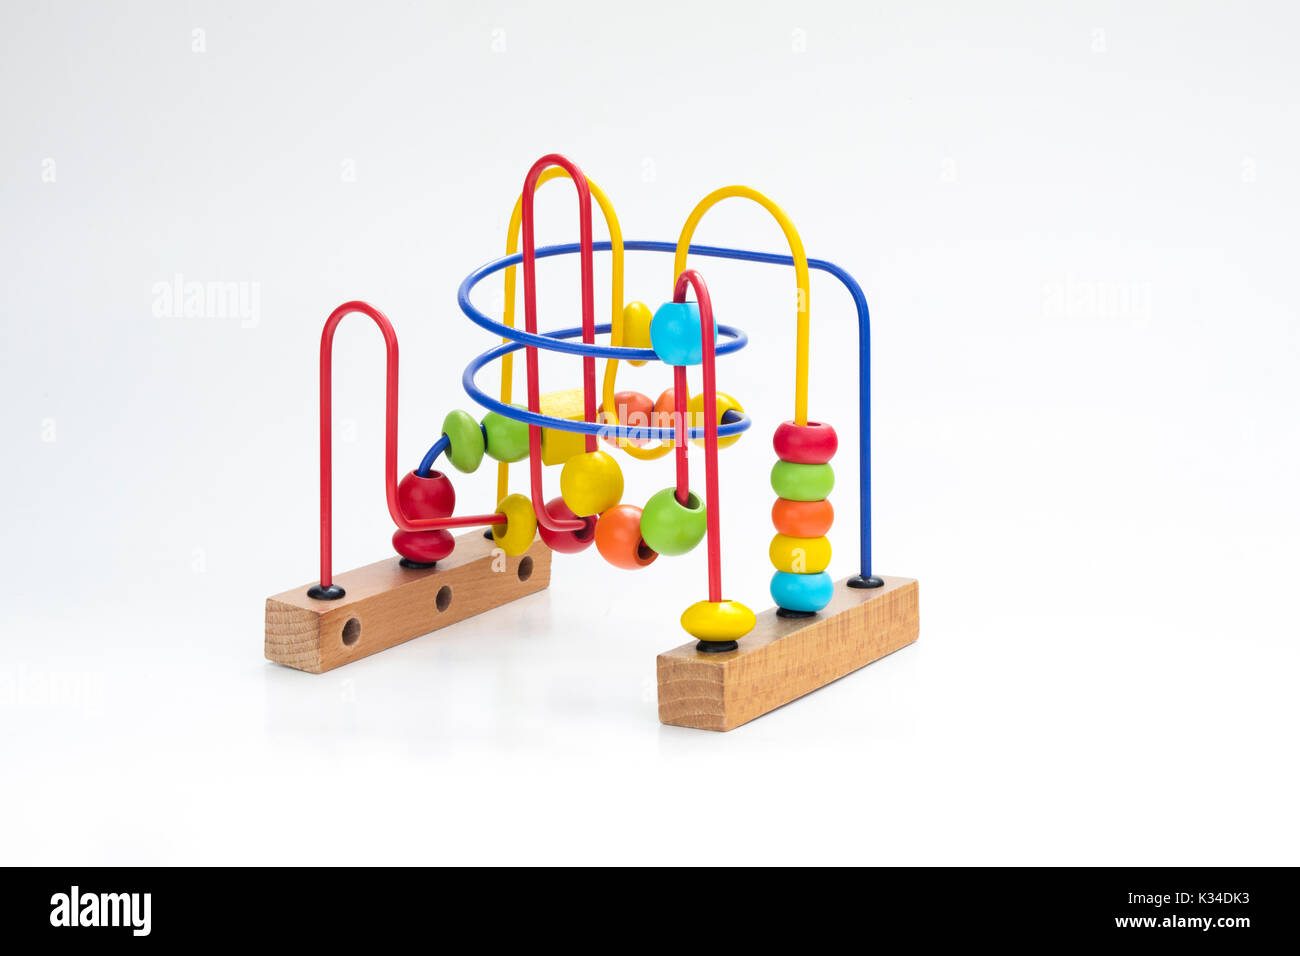 Bunte Spielzeug für Vorschüler, bestehend aus einem Eisen Struktur und mehrere Bälle, die supossed sind durch den Kreislauf zu bewegen. Stockfoto